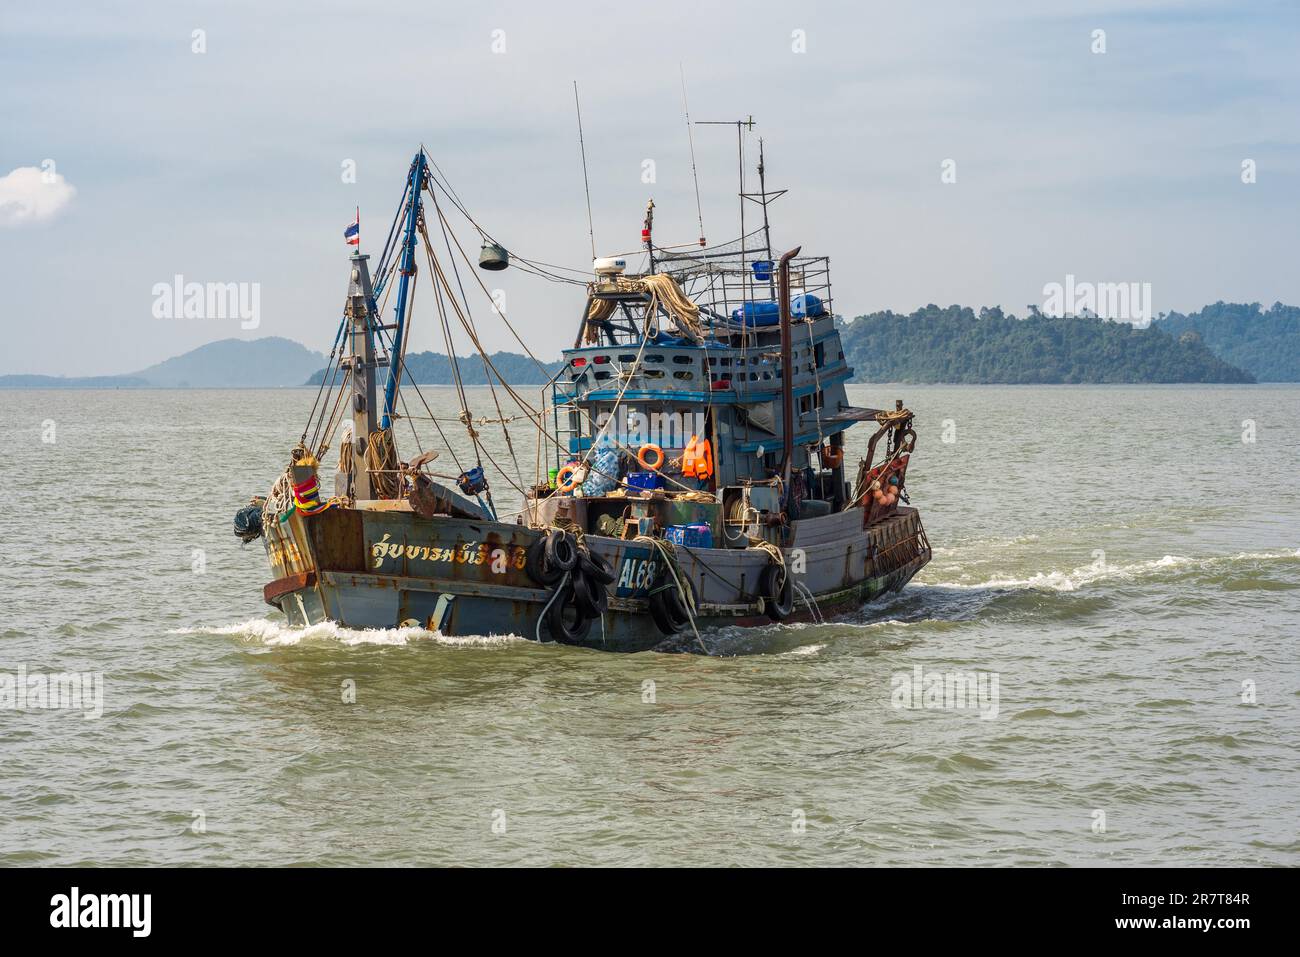 Le chalutier thaïlandais, de retour de la pêche, arrive au port industriel de Ranong dans le sud-ouest de la Thaïlande Banque D'Images